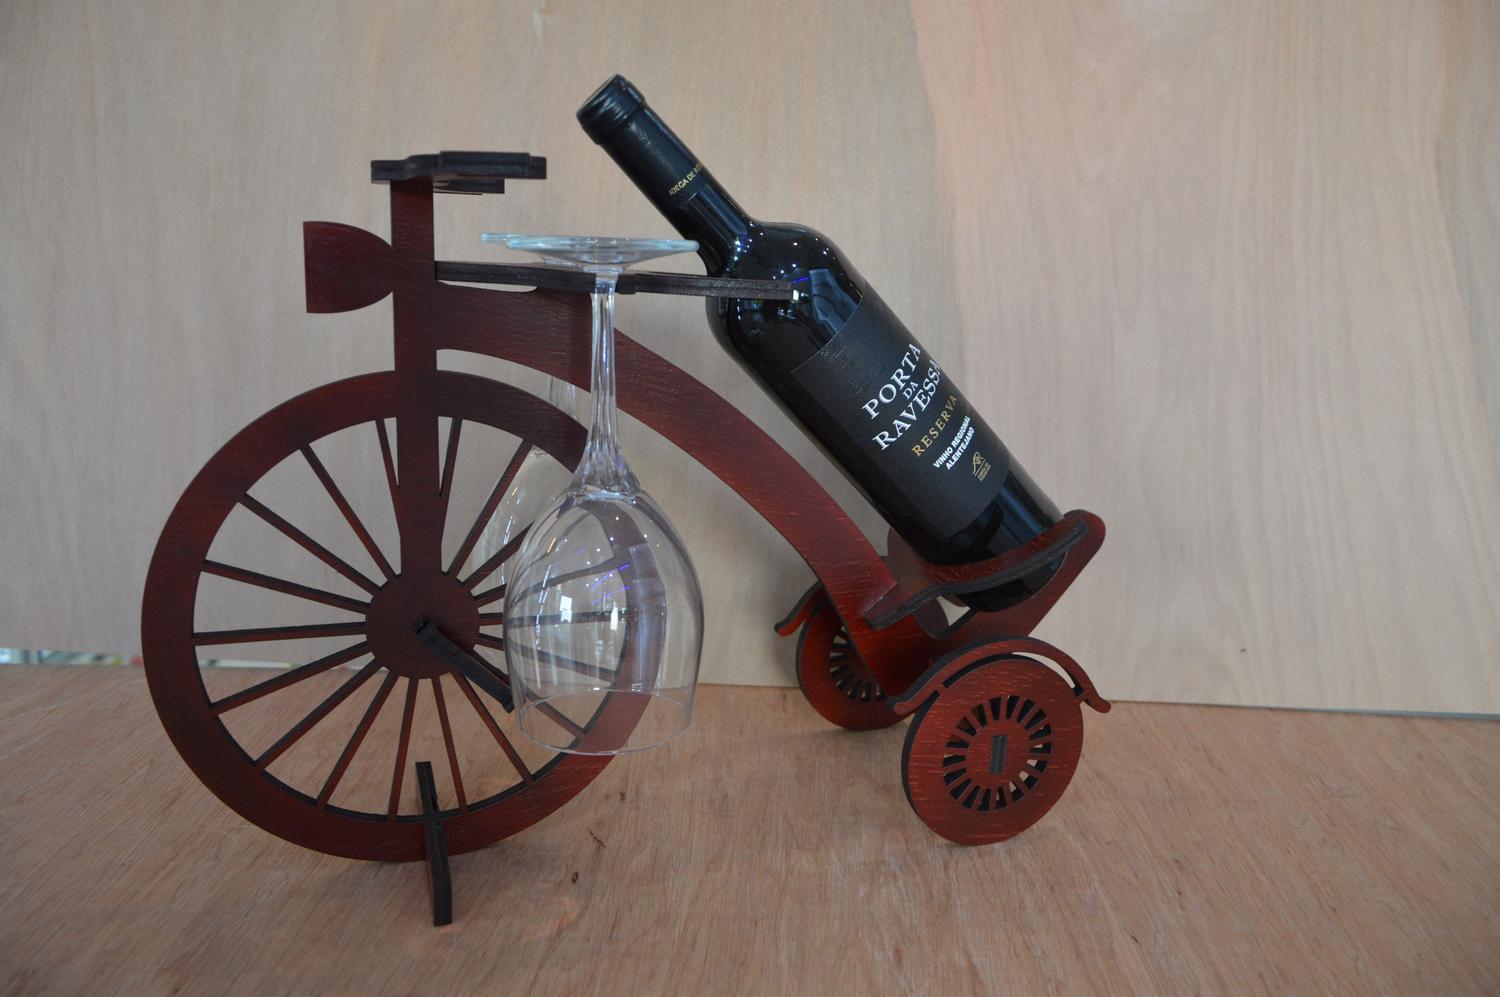 ديكور خشبي للدراجة حامل زجاجة النبيذ الرف قالب القطع بالليزر